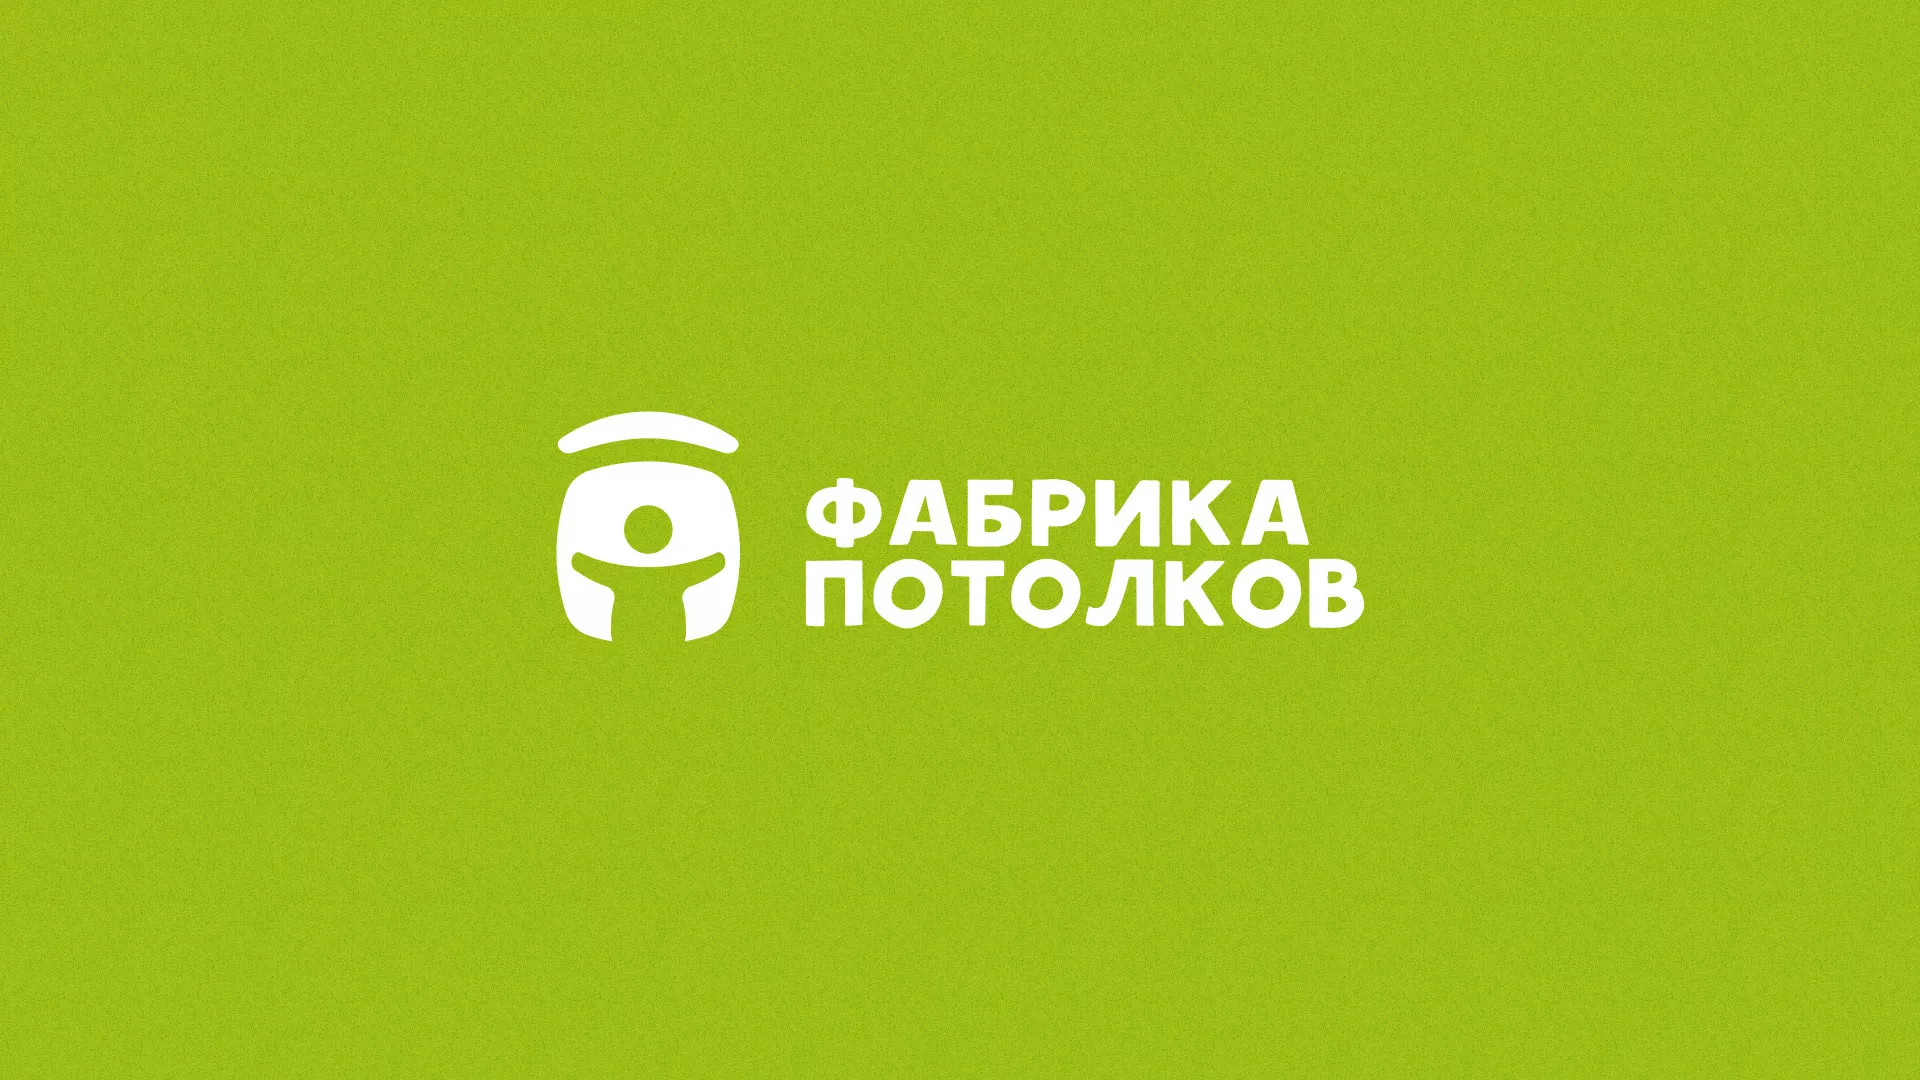 Разработка логотипа для производства натяжных потолков в Вёшках